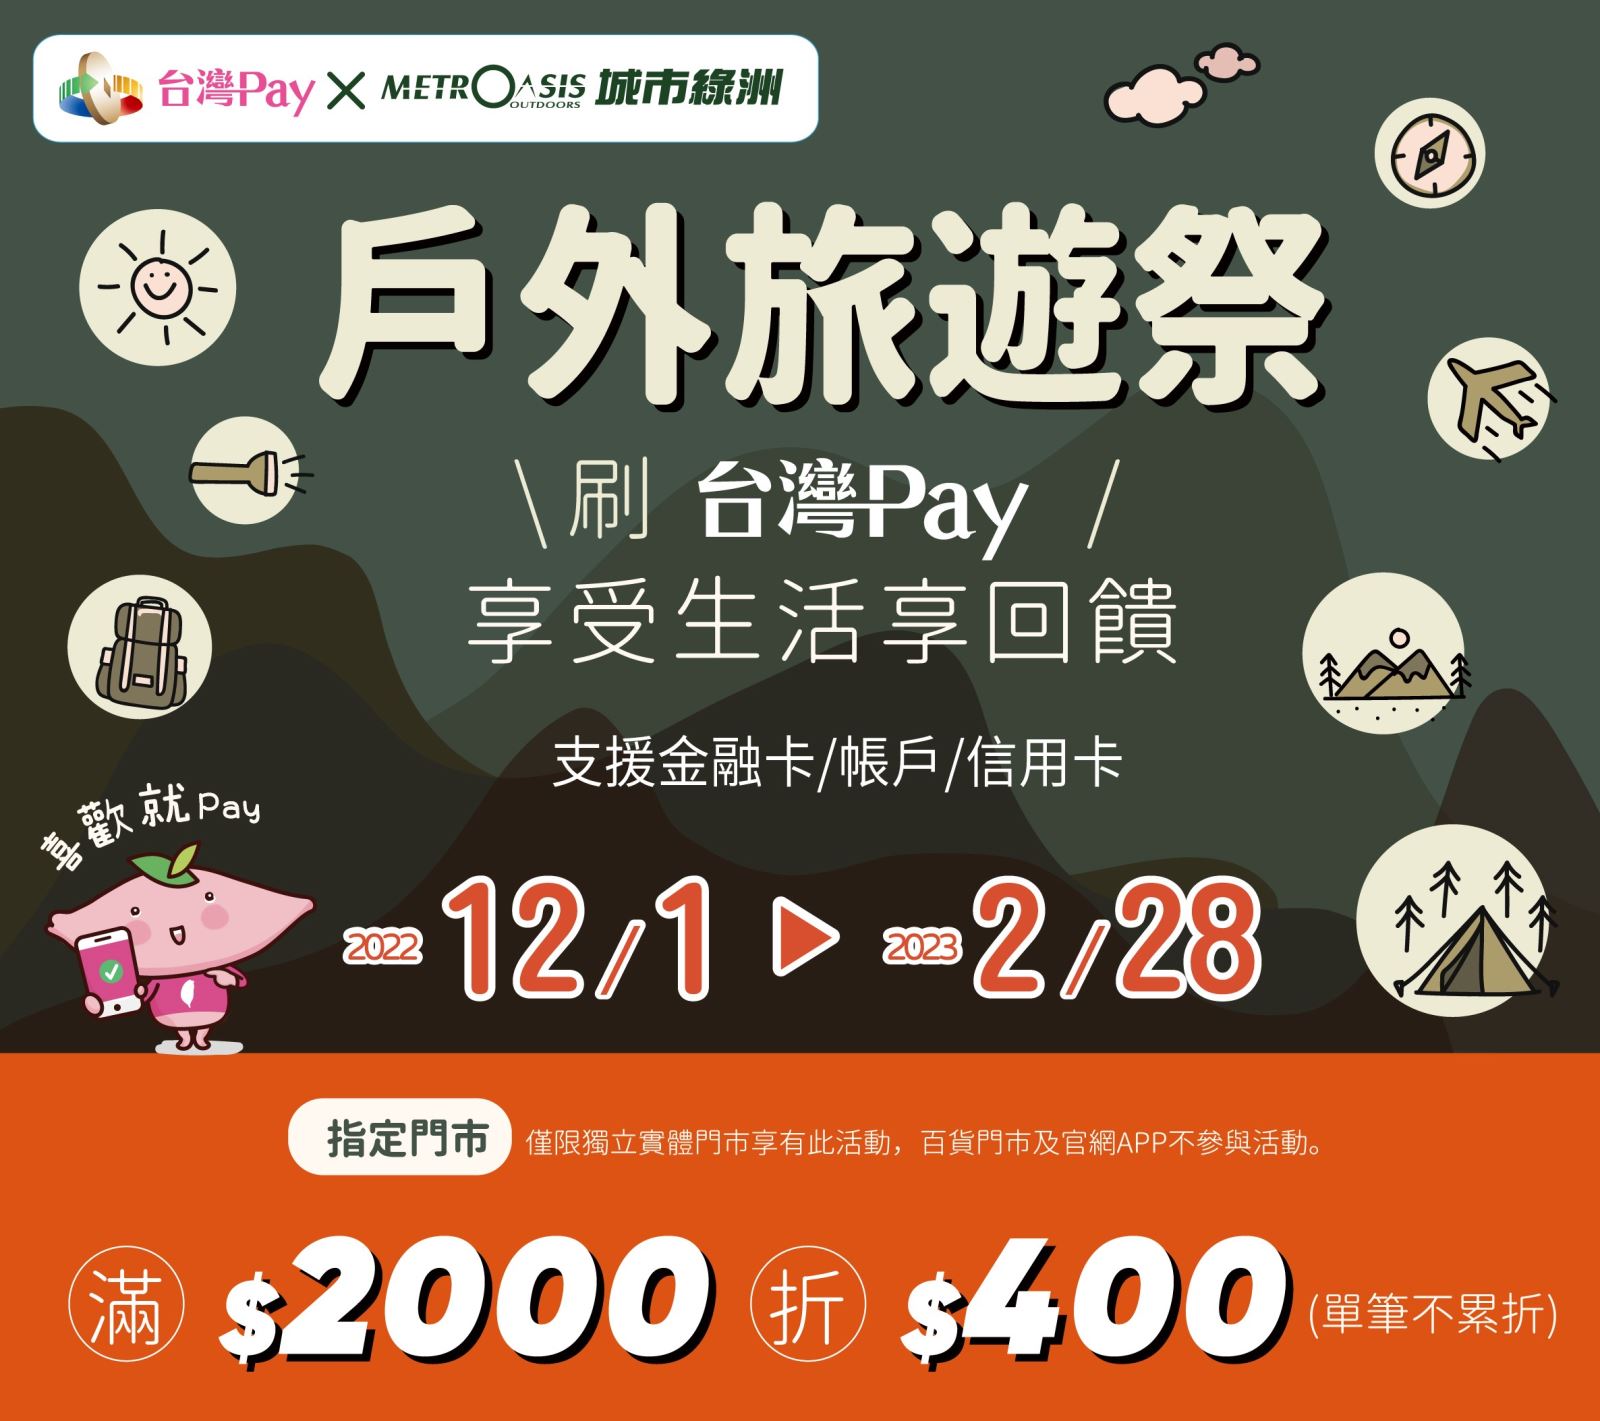 用戶至活動地點消費，出示「台灣Pay」付款條碼進行支付，「單筆交易結帳金額」滿新臺幣2000元(含)以上，即享現折400元優惠